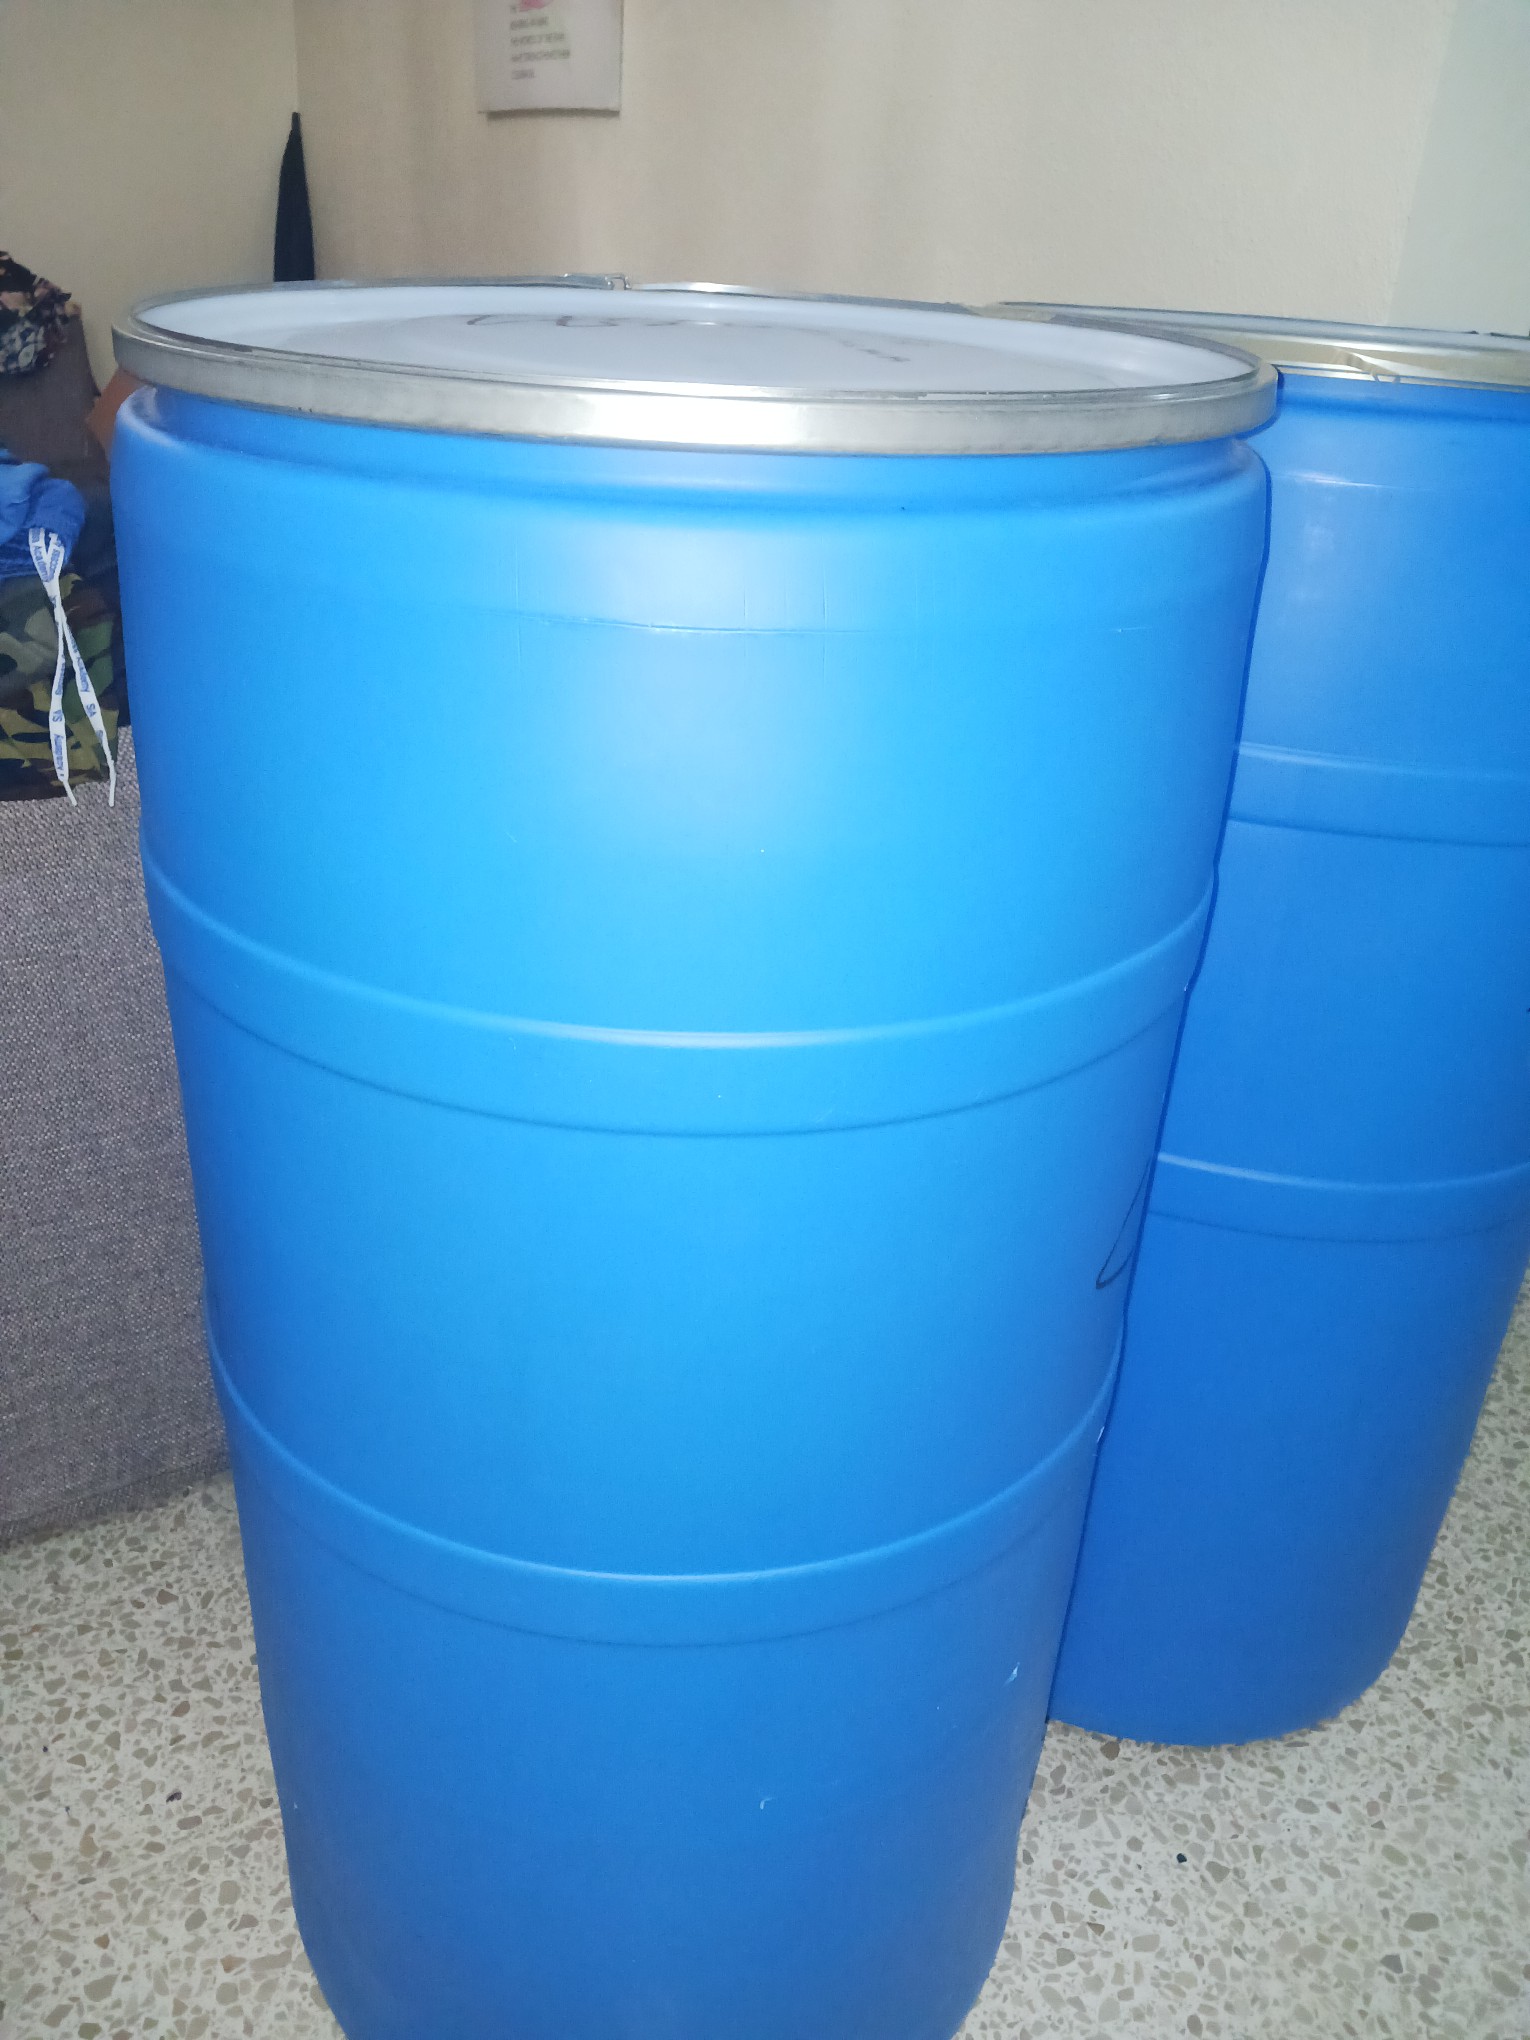 electrodomesticos - Vendo tanque de agua azul